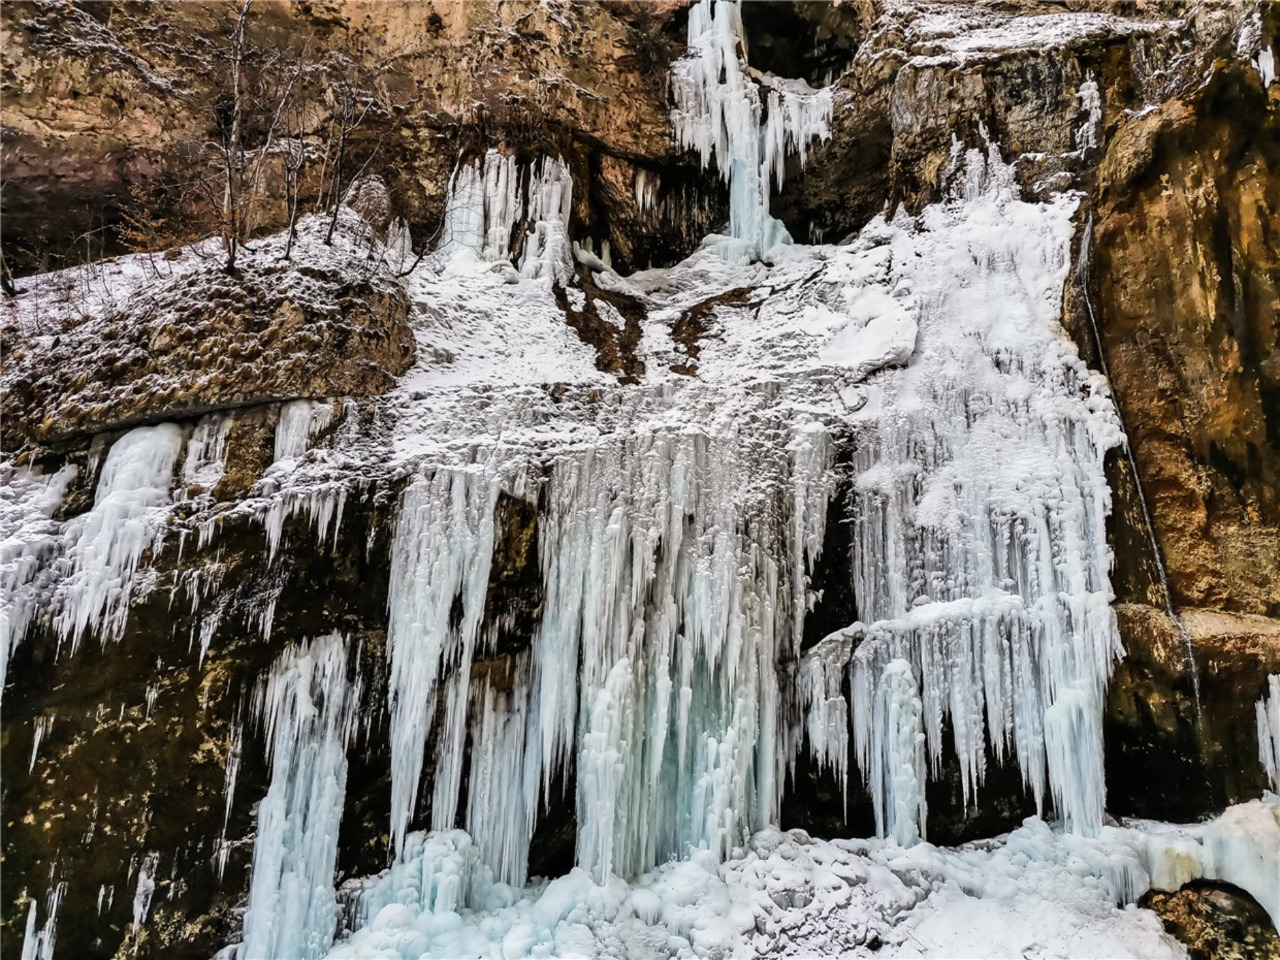 Чегемские водопады, Гижгит, Актопрак из Пятигорска | Цена 3500₽, отзывы, описание экскурсии